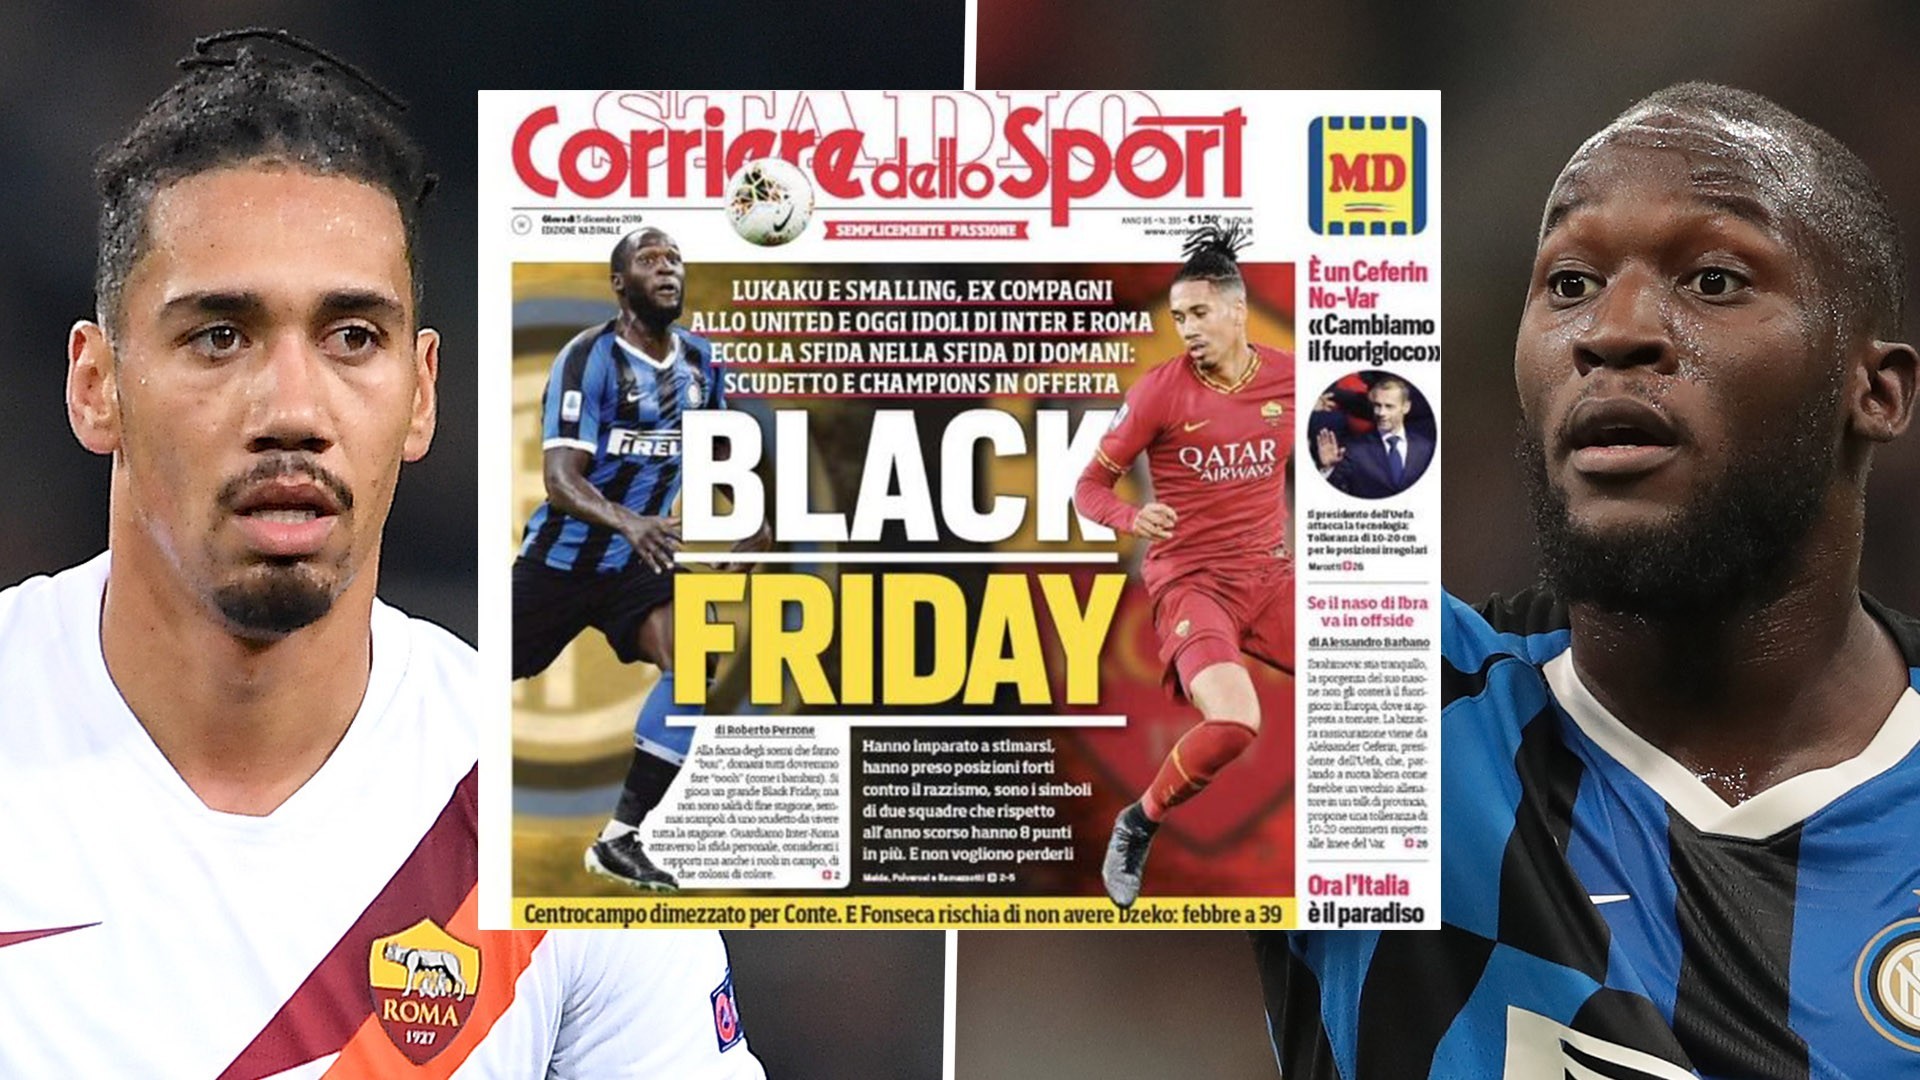 არა რასიზმს – მილანი და რომა Corriere dello Sport-ის წინააღმდეგ გაერთიანდნენ